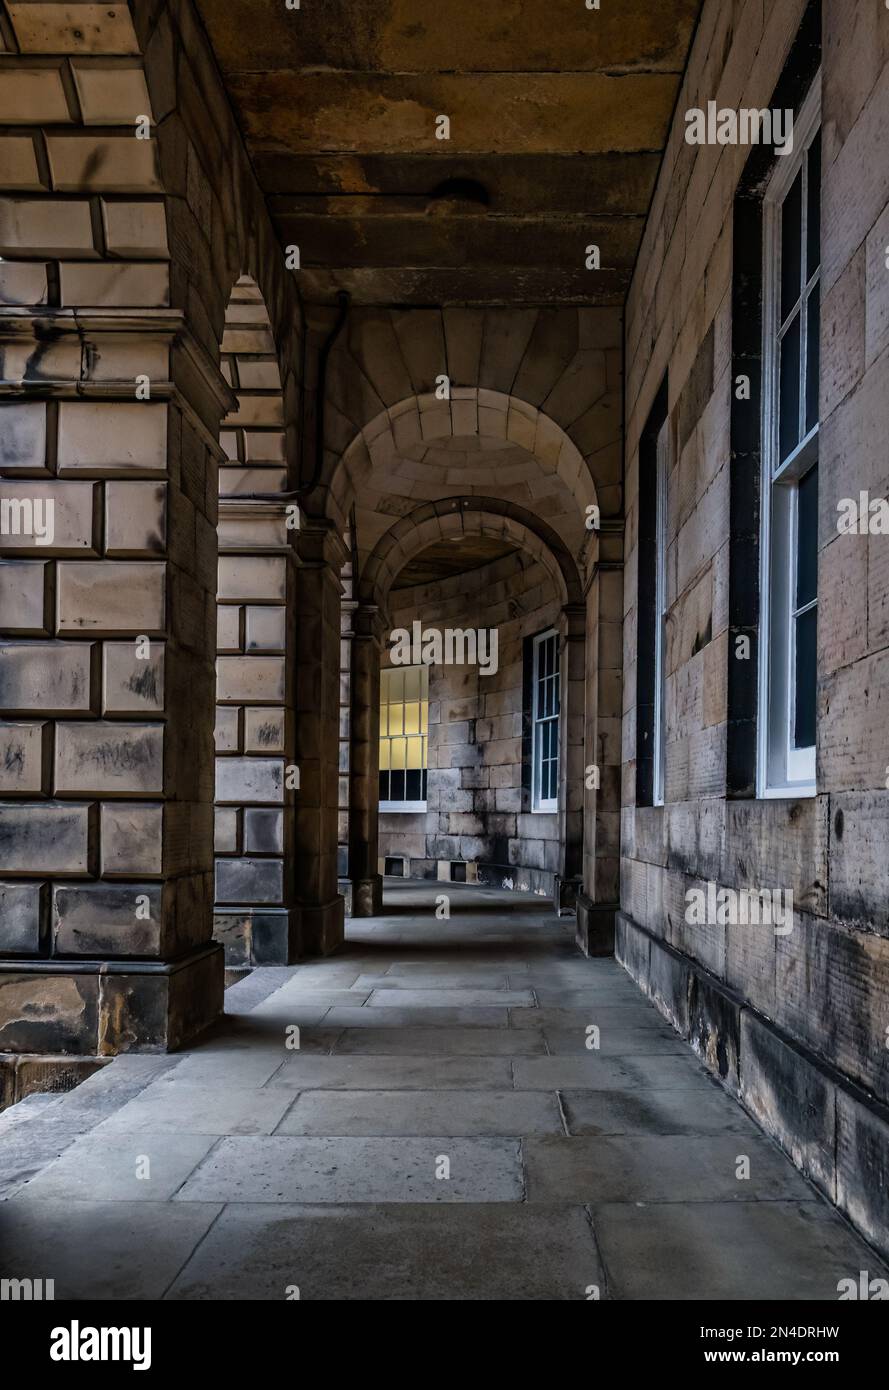 Corridoio o corridoio coperto presso l'edificio del tribunale di sessione, Piazza del Parlamento, Edimburgo, Scozia, Regno Unito Foto Stock